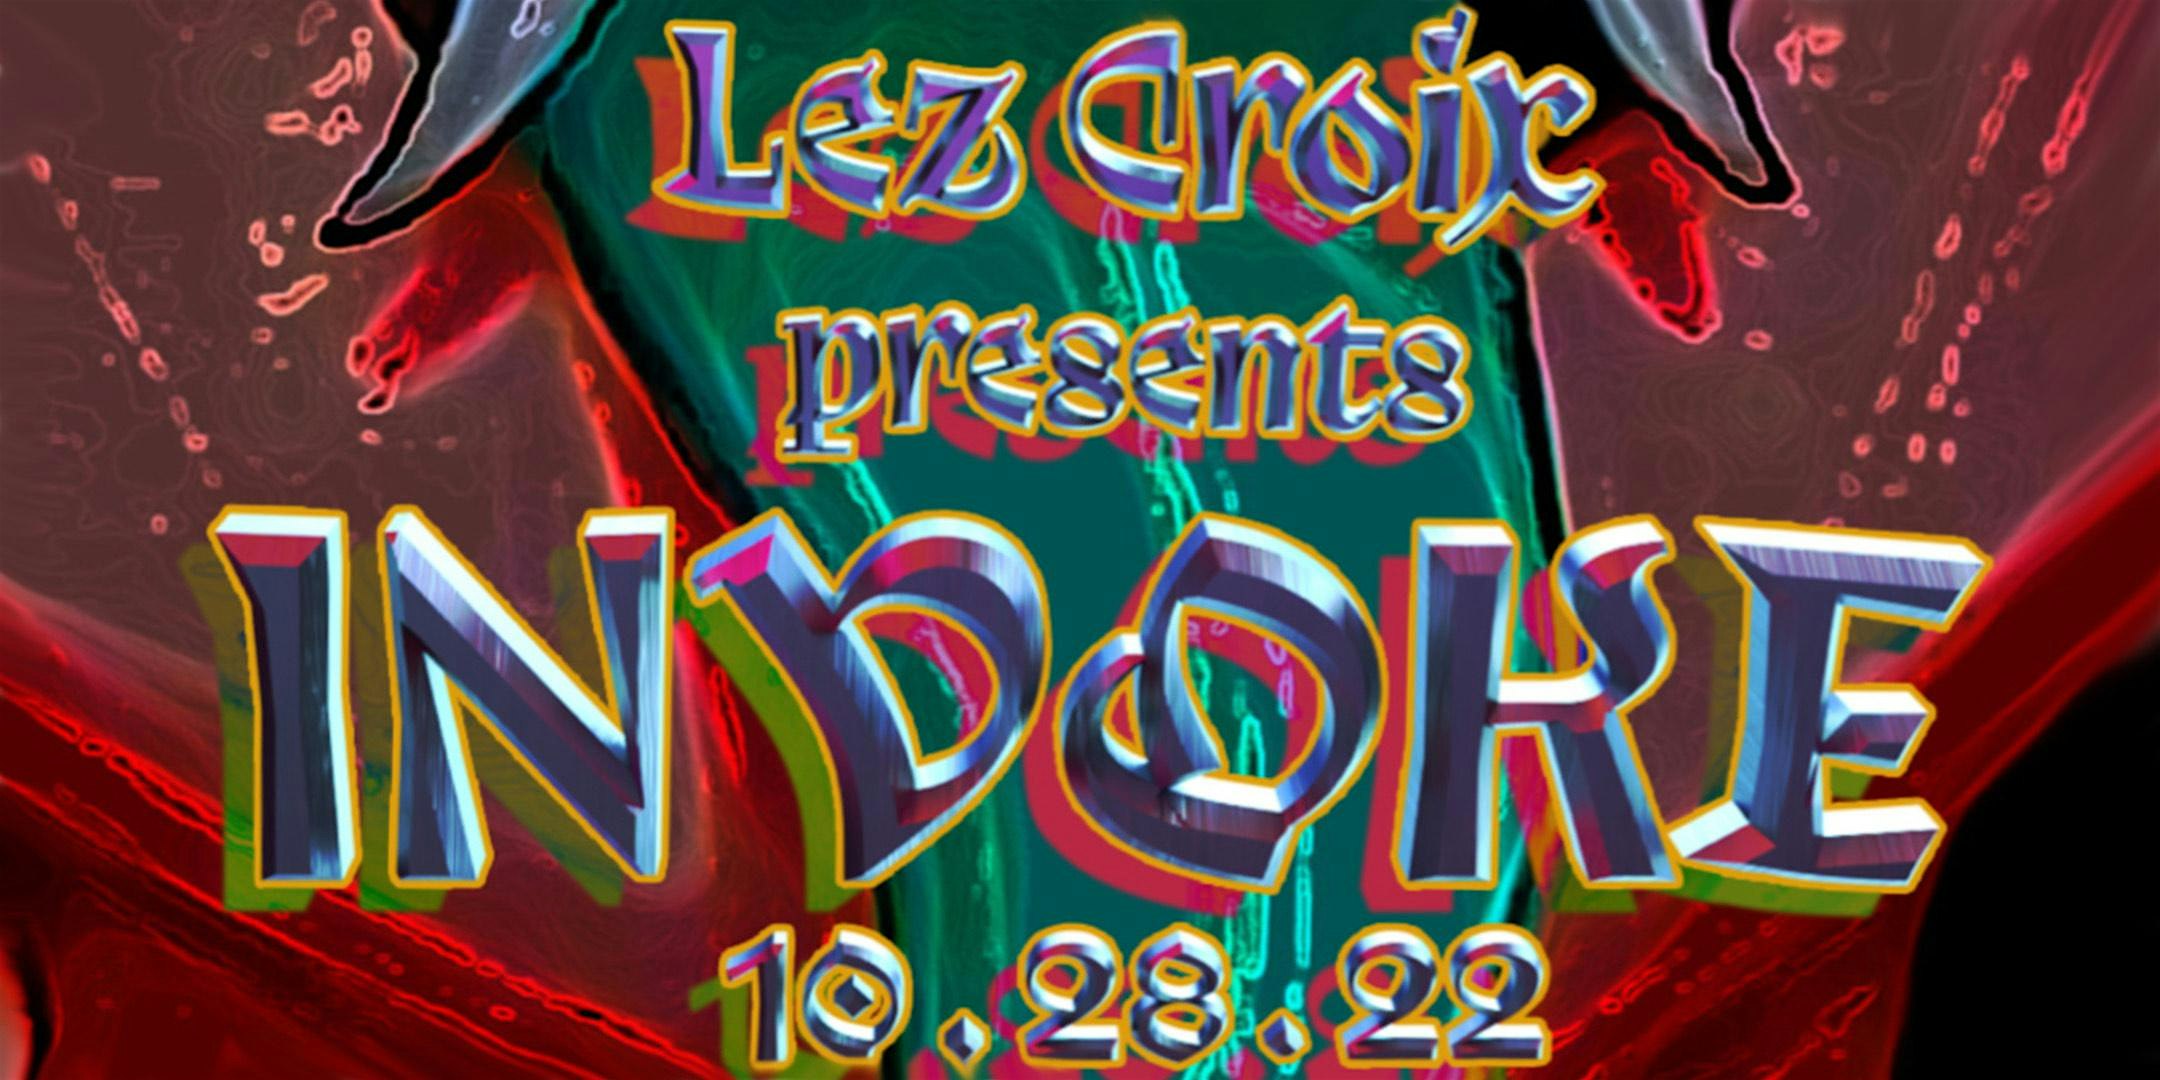 Lez Croix Presents INVOKE